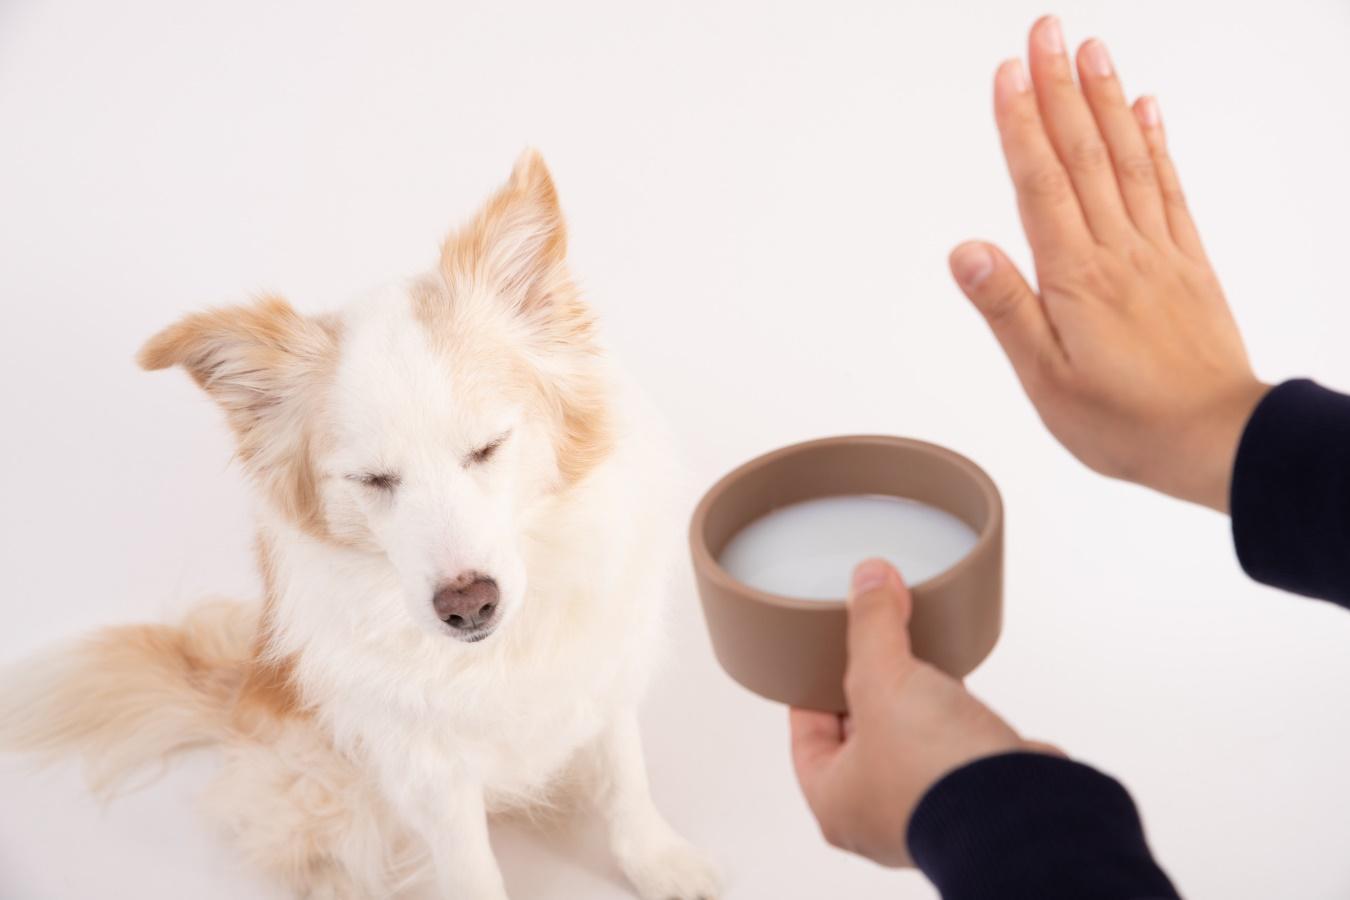 ミルクの入った容器を持って「待て」のポーズをする人の手とお座りをする犬